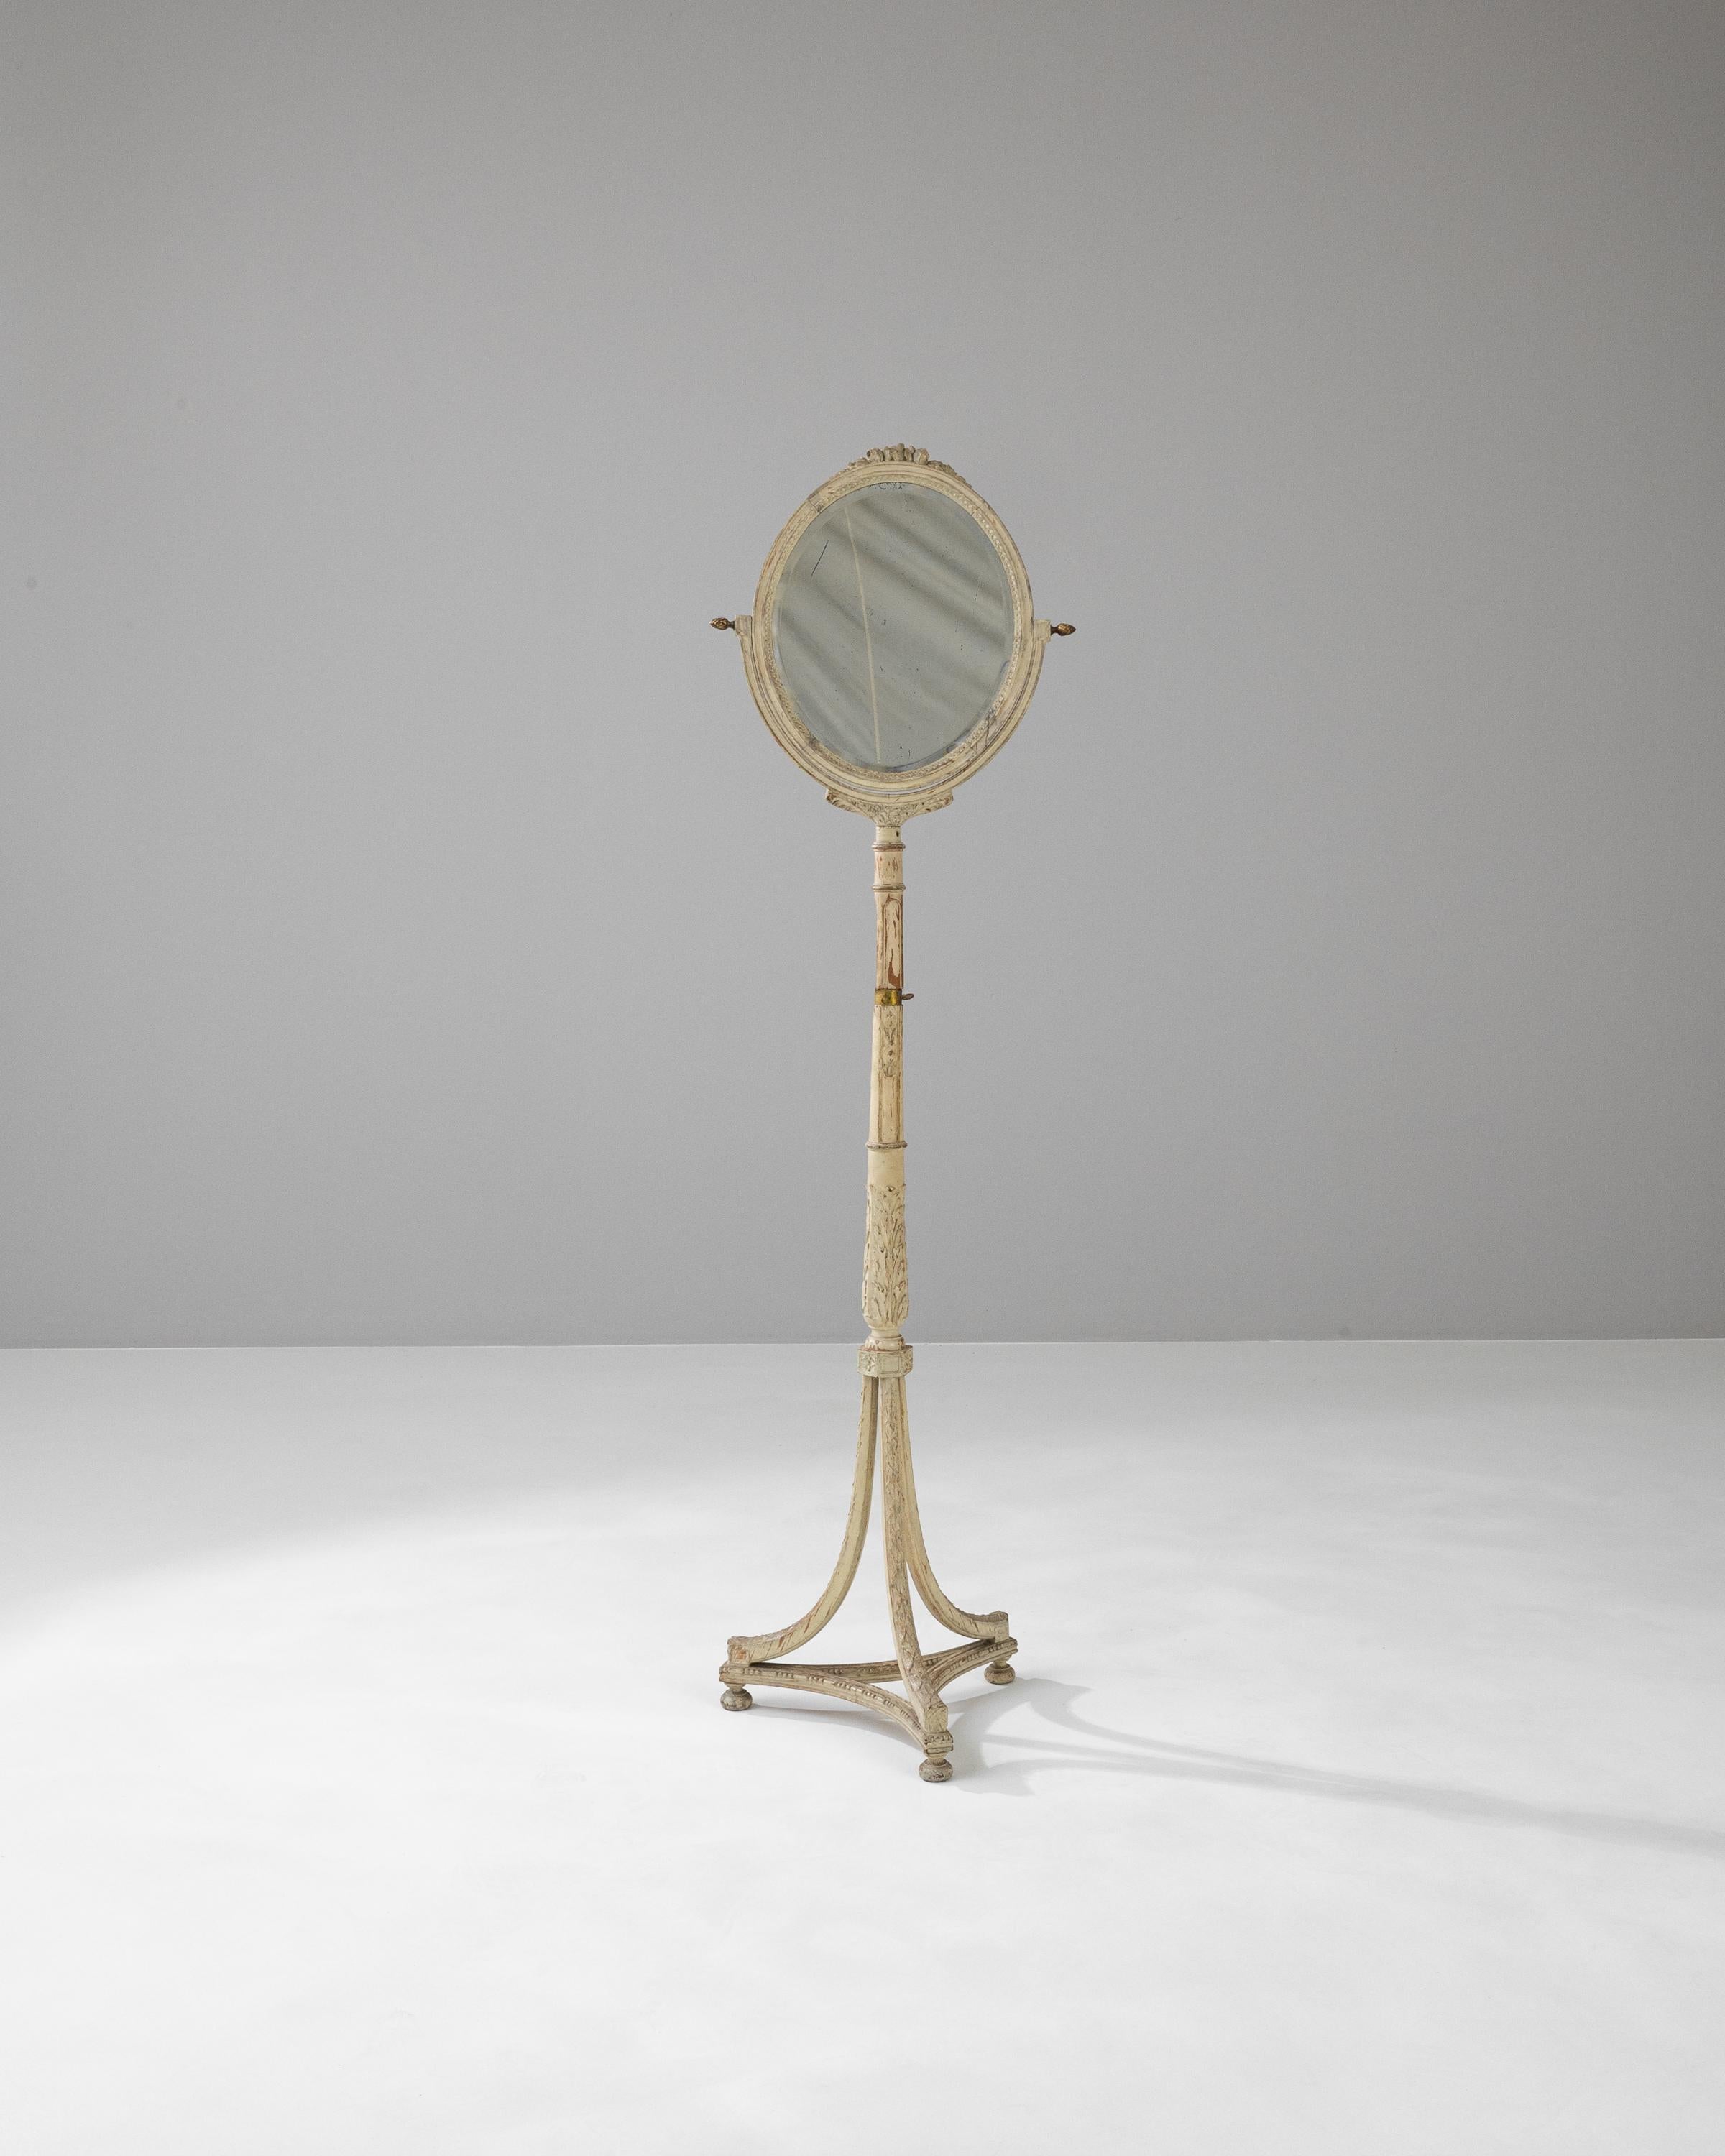 Replongez dans l'élégance du 19ème siècle avec cet exquis miroir de sol en bois français. D'une beauté raffinée, il présente une patine blanche gracieusement vieillie qui met en valeur les sculptures complexes de son cadre et de son socle. Le miroir